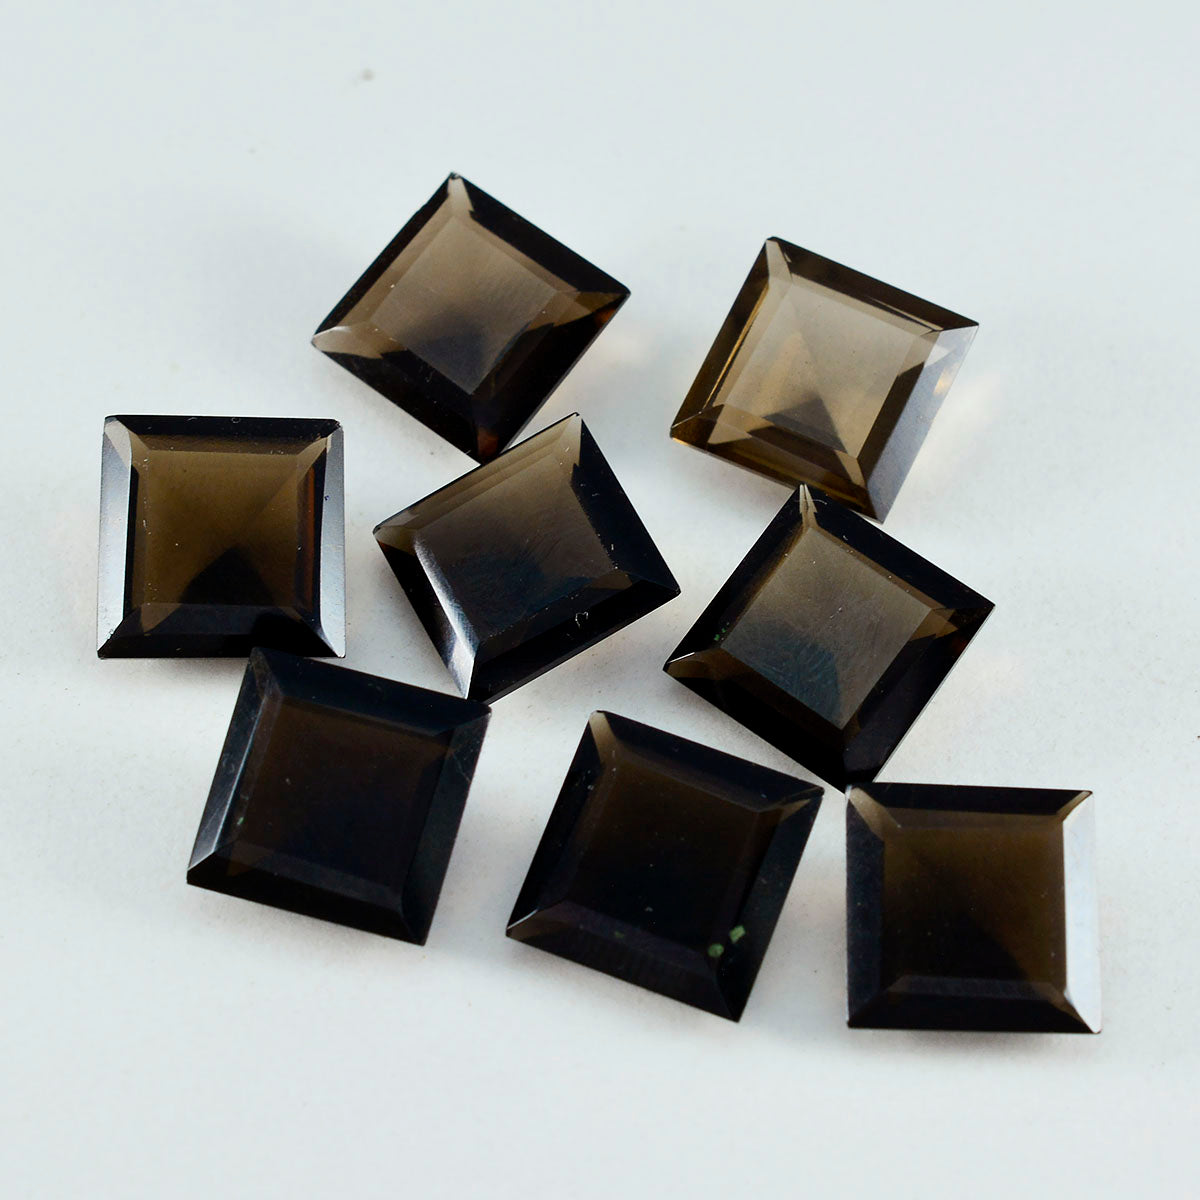 riyogems 1 шт. натуральный коричневый дымчатый кварц ограненный 13x13 мм квадратной формы драгоценный камень удивительного качества